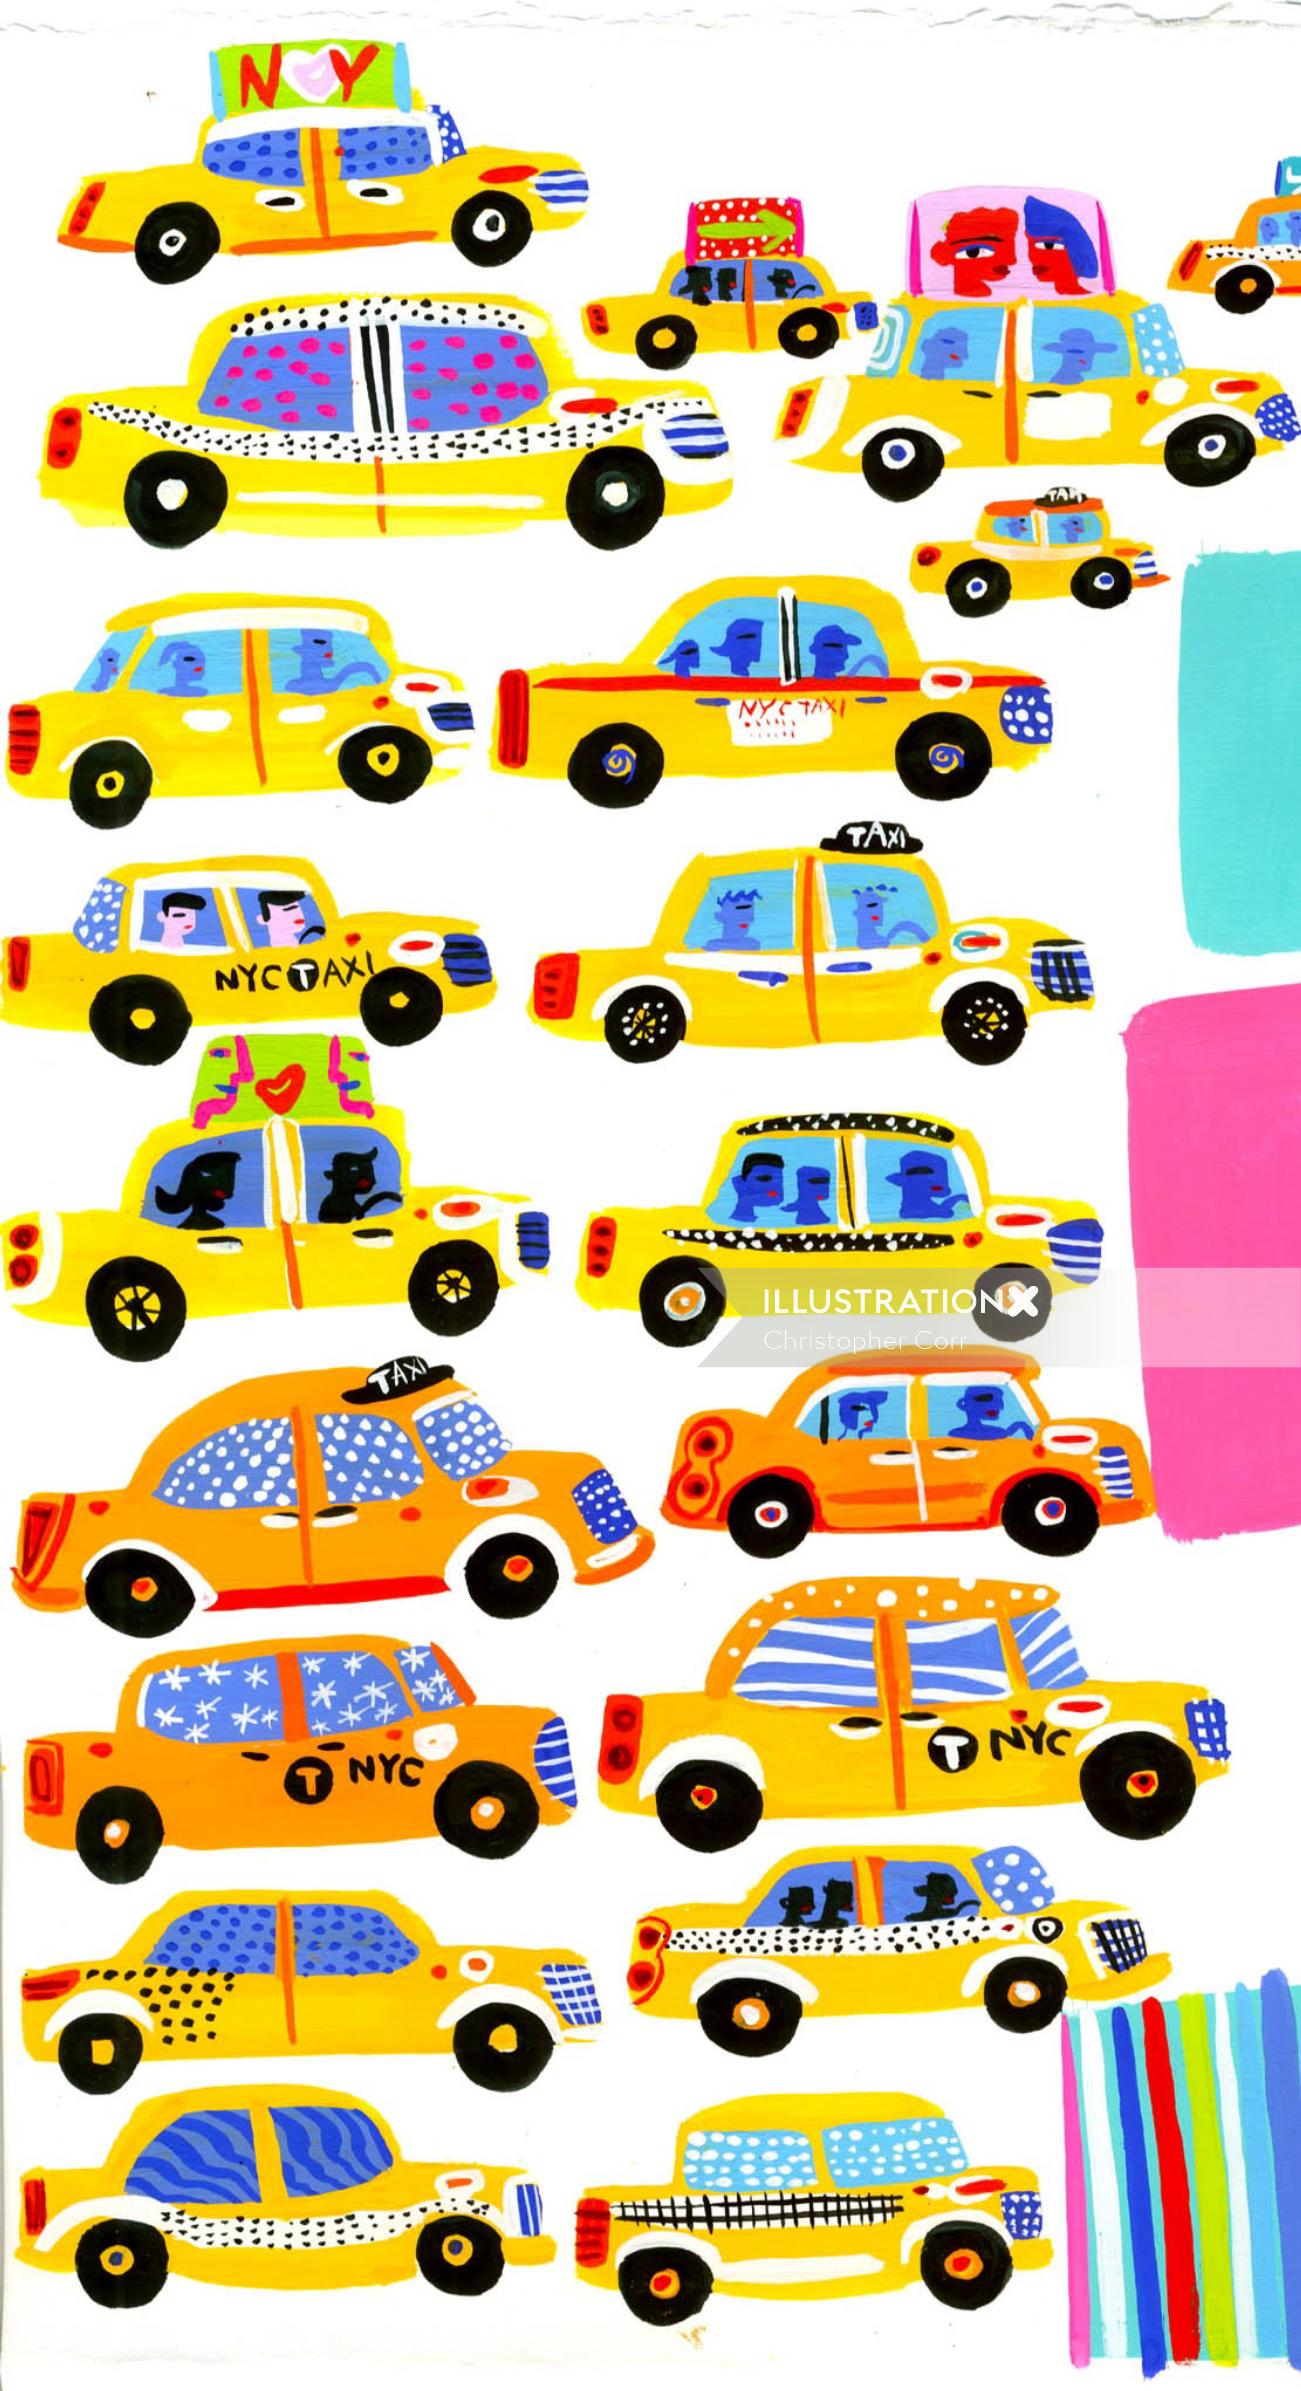 Pintura táxi da cidade de Nova York